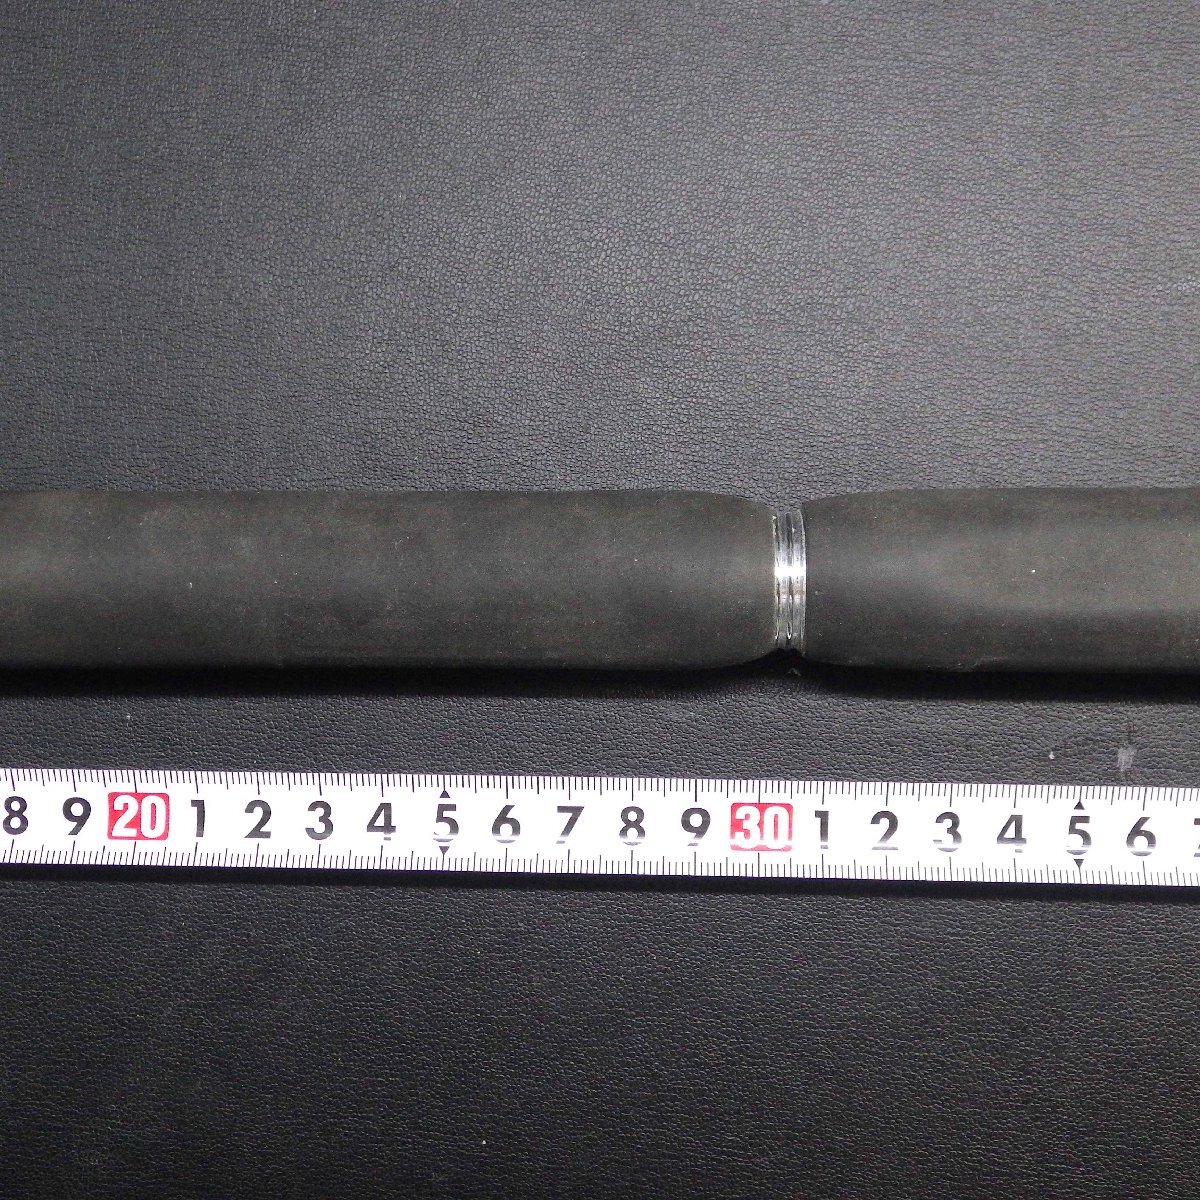 Shimano BJS bat обычный 20N-DP примерно 51cm внутренний диаметр примерно 1.75cm. часть наружный диаметр примерно 2.29cm примерно 134g * б/у наличие товар (xb0201)* нестандартная пересылка 